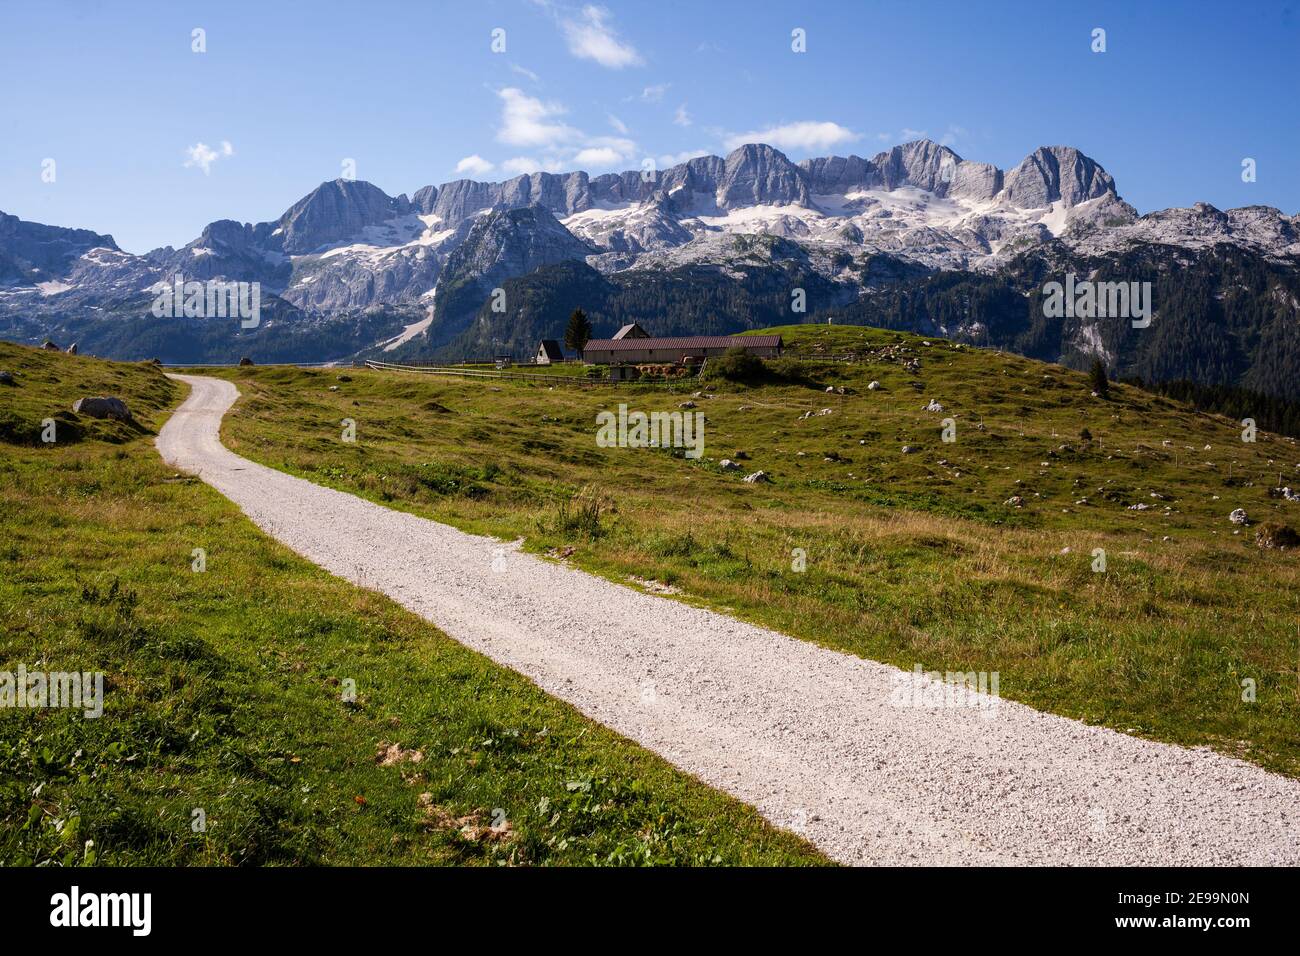 Vide route de terre dans les Alpes avec vue sur la montagne de Canin au loin et des pâturages verts avec grange au milieu. Banque D'Images